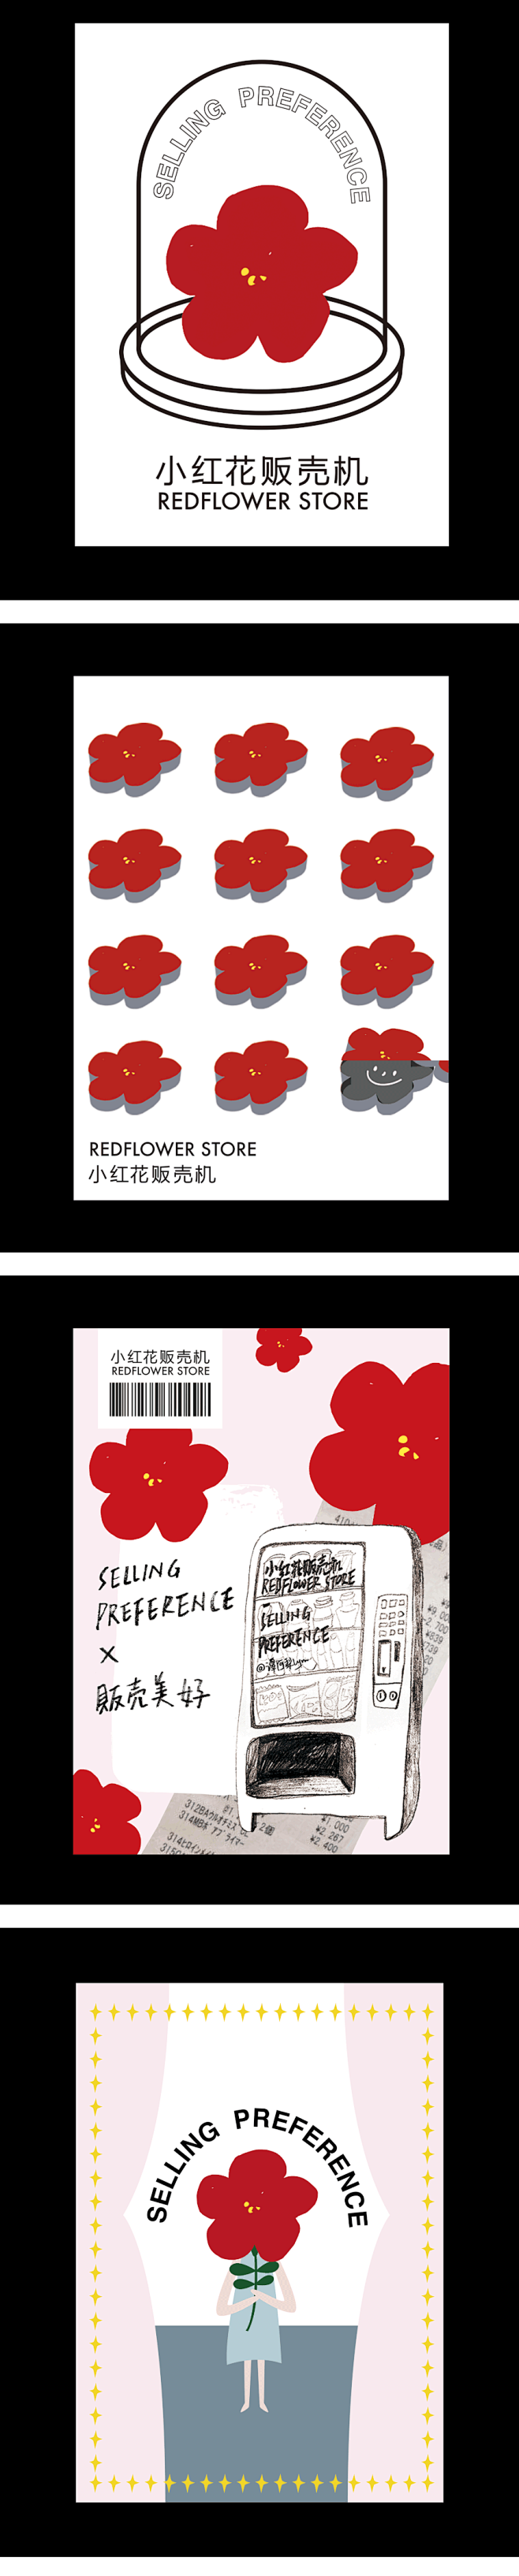 小红花贩卖机视觉形象